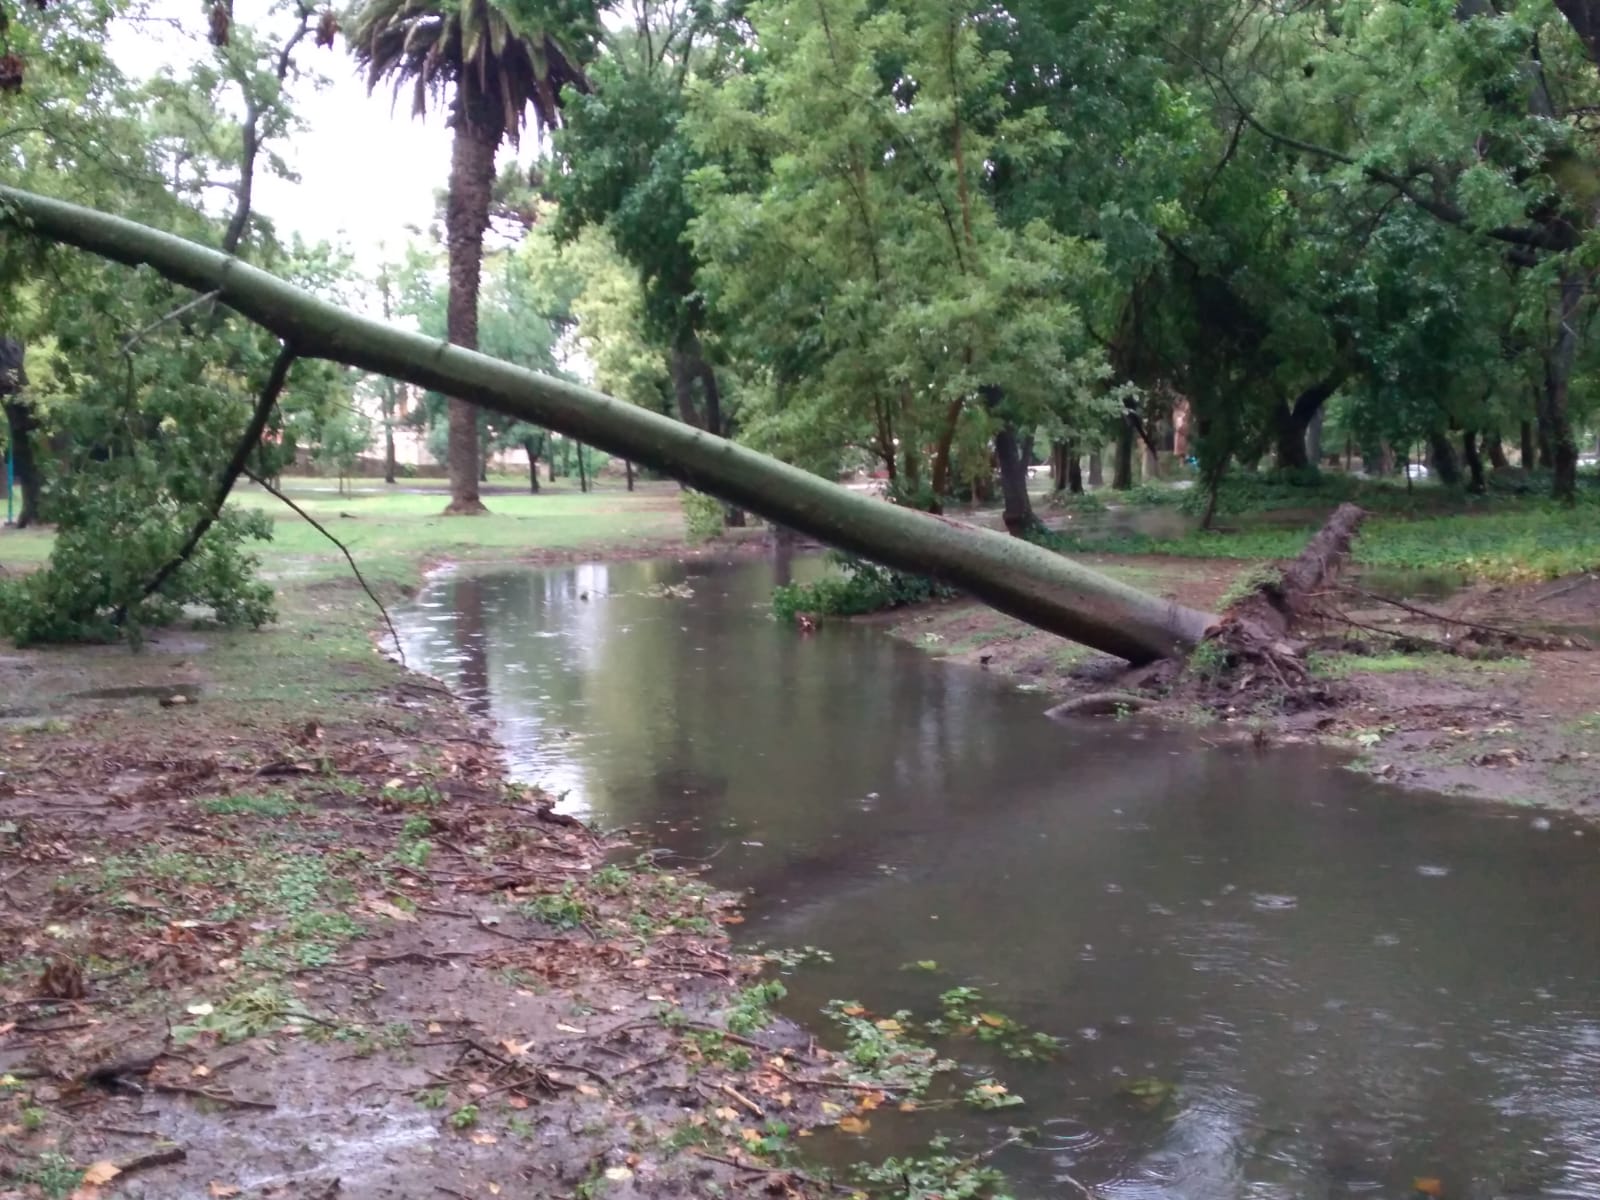 La lluvia y posterior inundación del Parque Gral. San Martín causo la caída de varios arboles